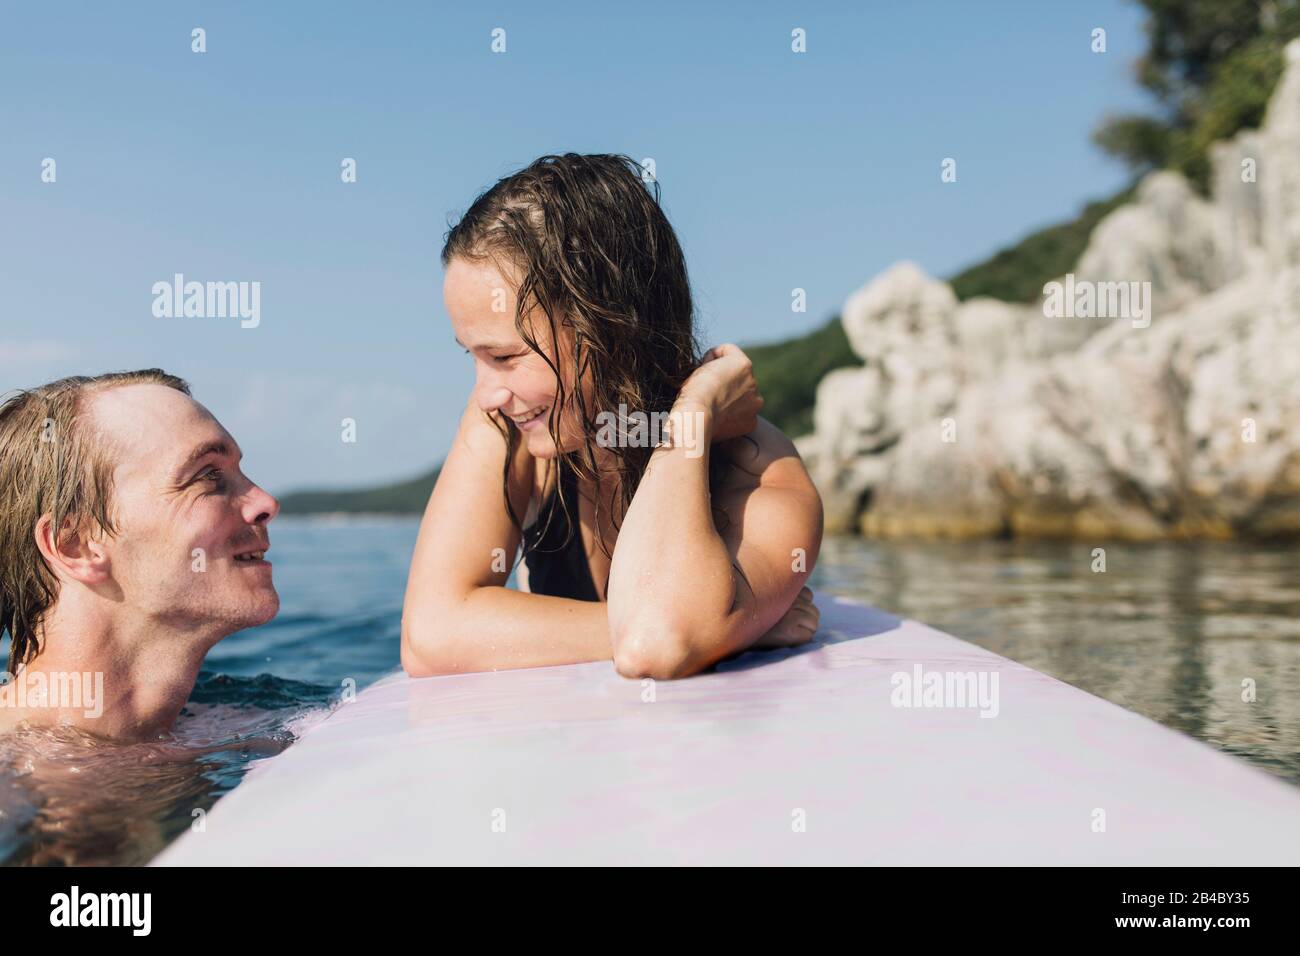 Junge Frau und junger Mann auf einem Surfbrett bzw im Wasser, Cres, Kroatien Foto Stock